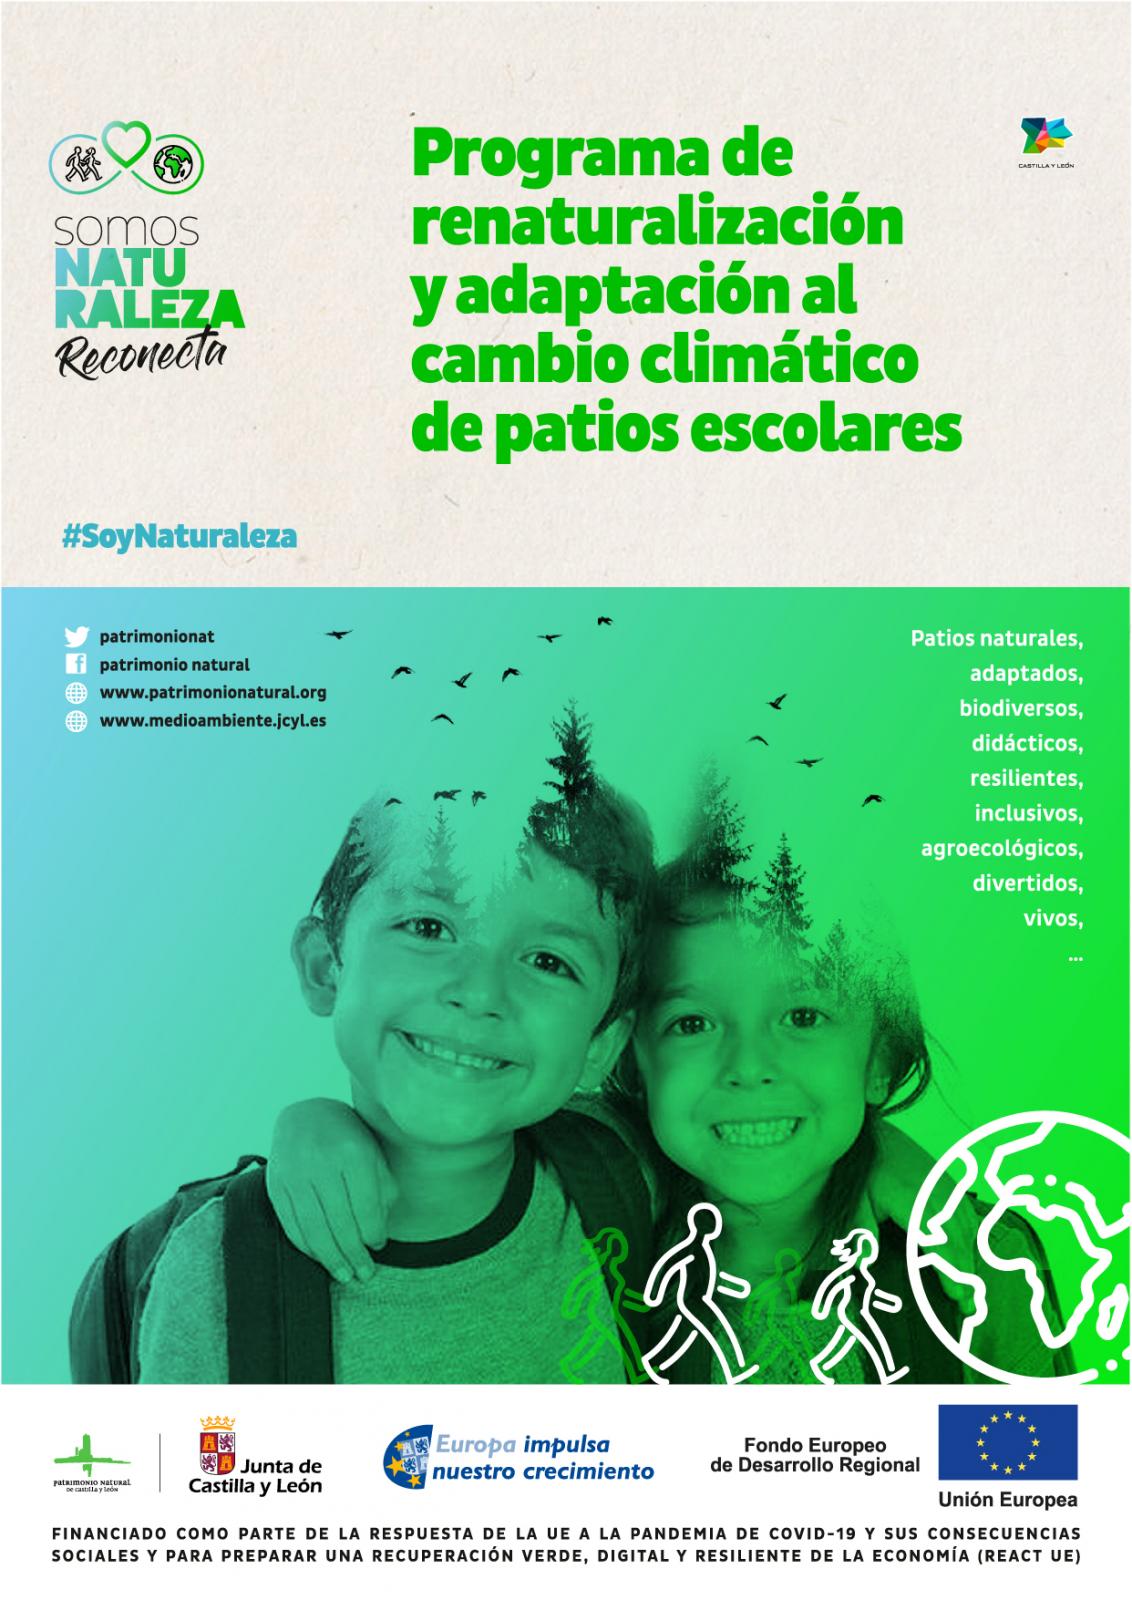 Salen a licitación las obras de adaptación al cambio climático y renaturalización de centros educativos en la provincia de Segovia